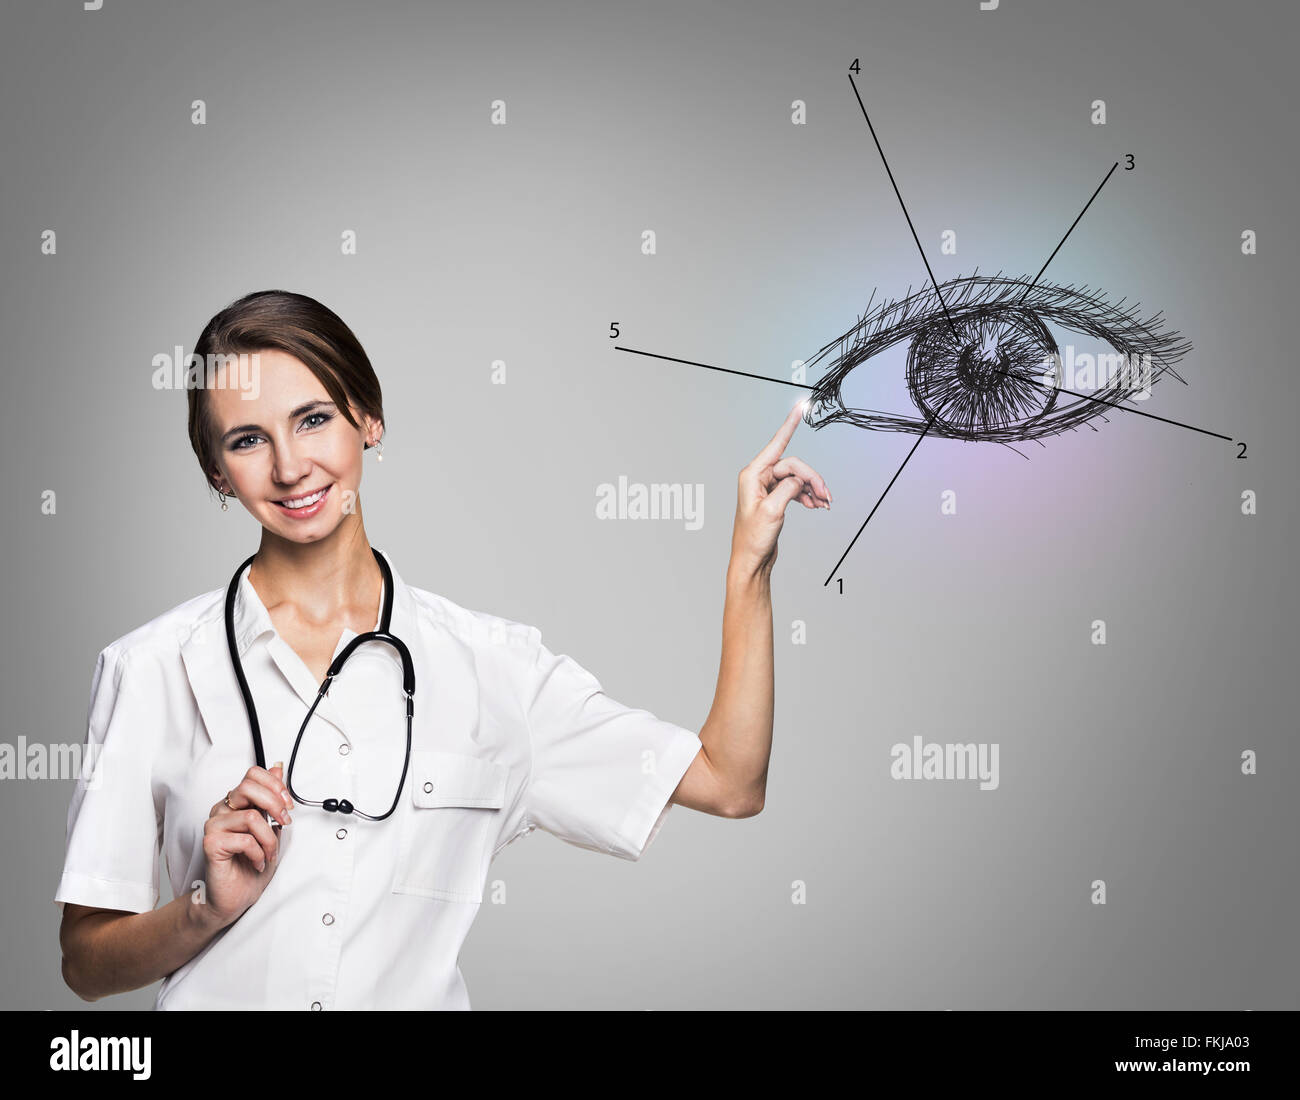 Femme médecin en uniforme touch peint oeil humain Banque D'Images